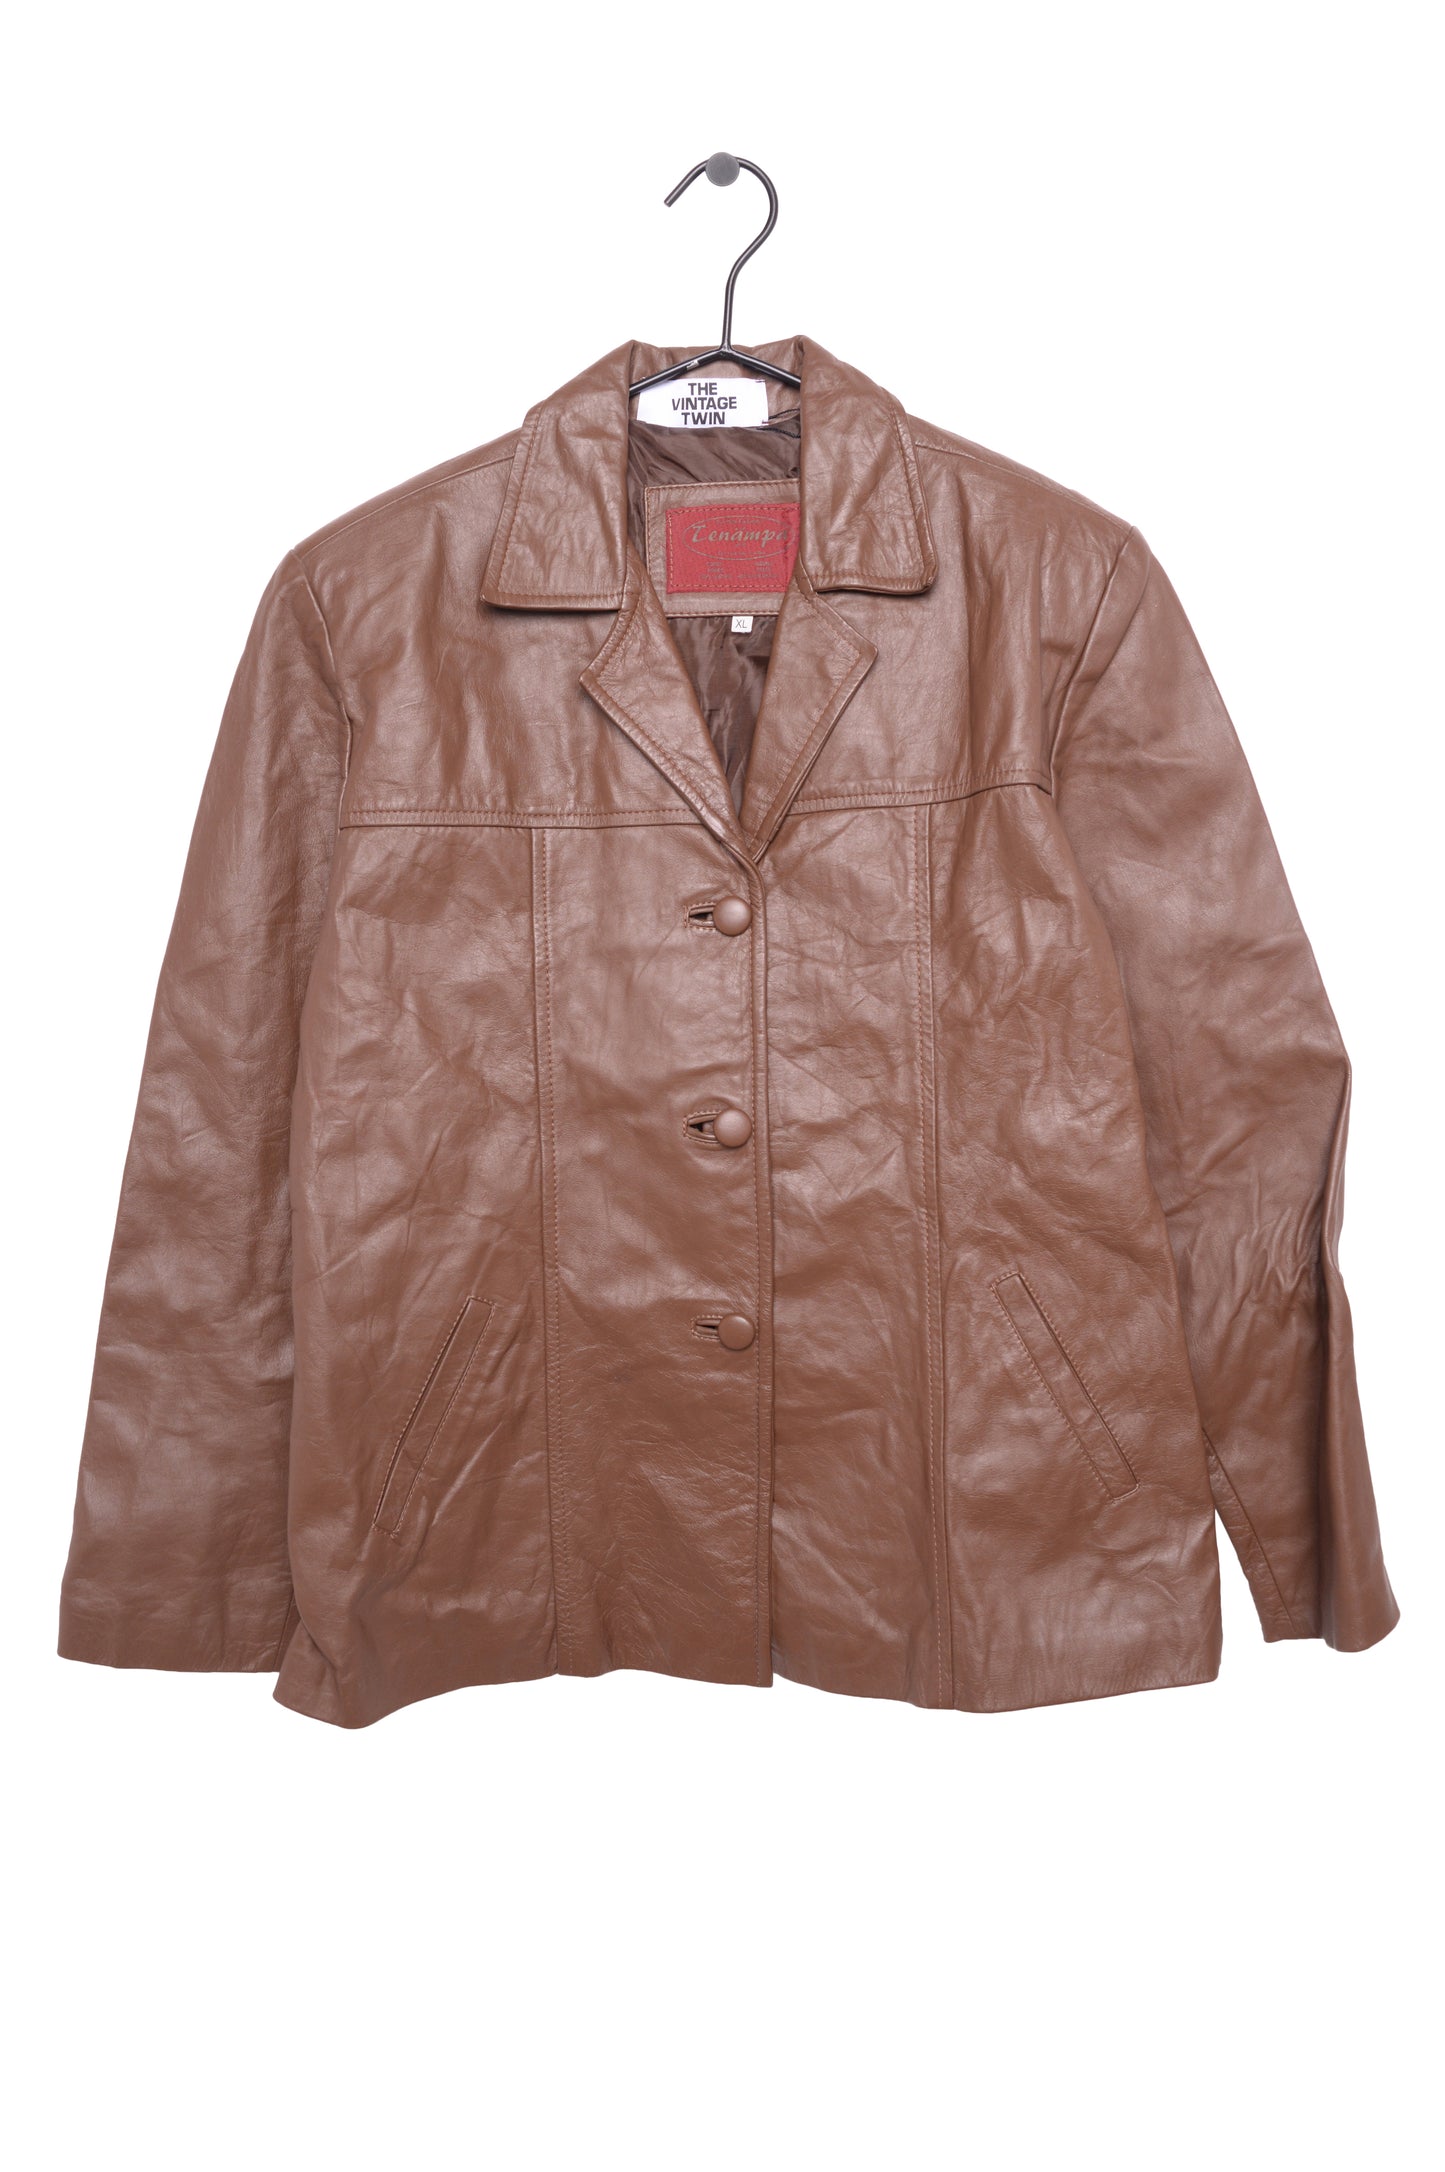 1970s Caramel Leather Jacket